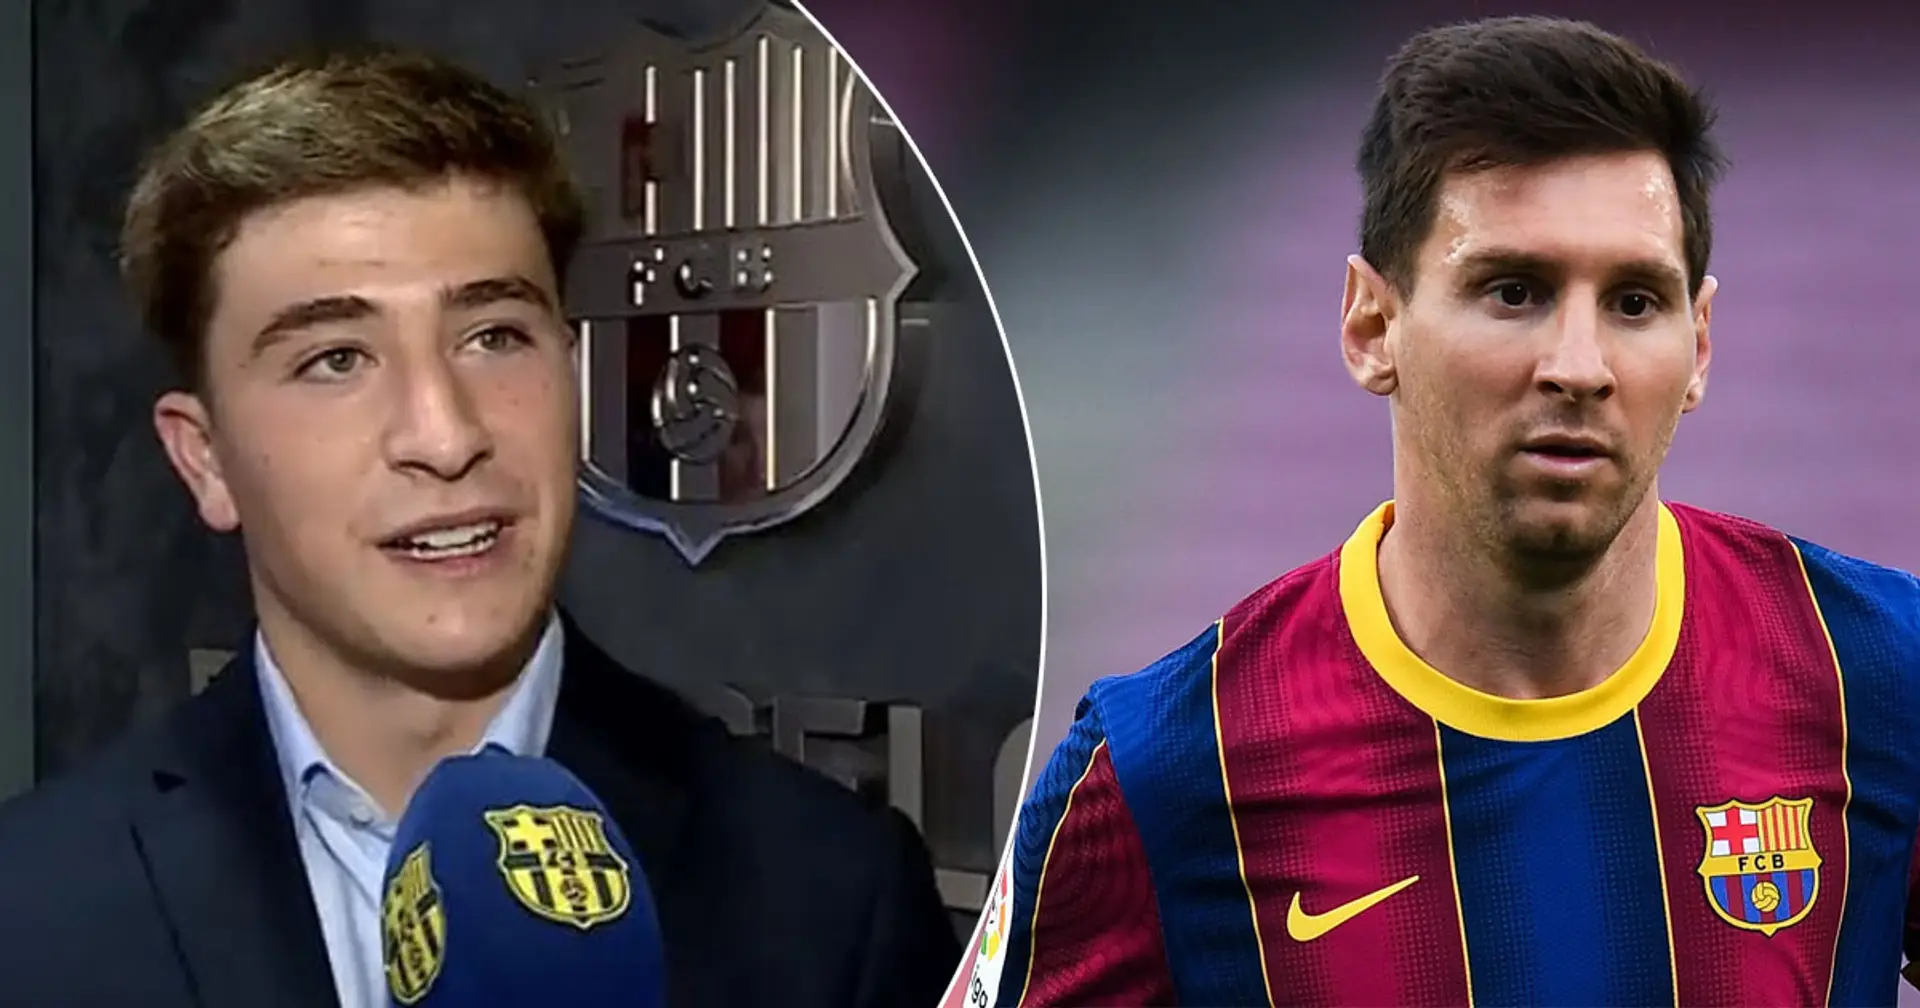 Pablo Torre nomme ses 3 idoles d'enfance - toutes ont joué pour le Barça